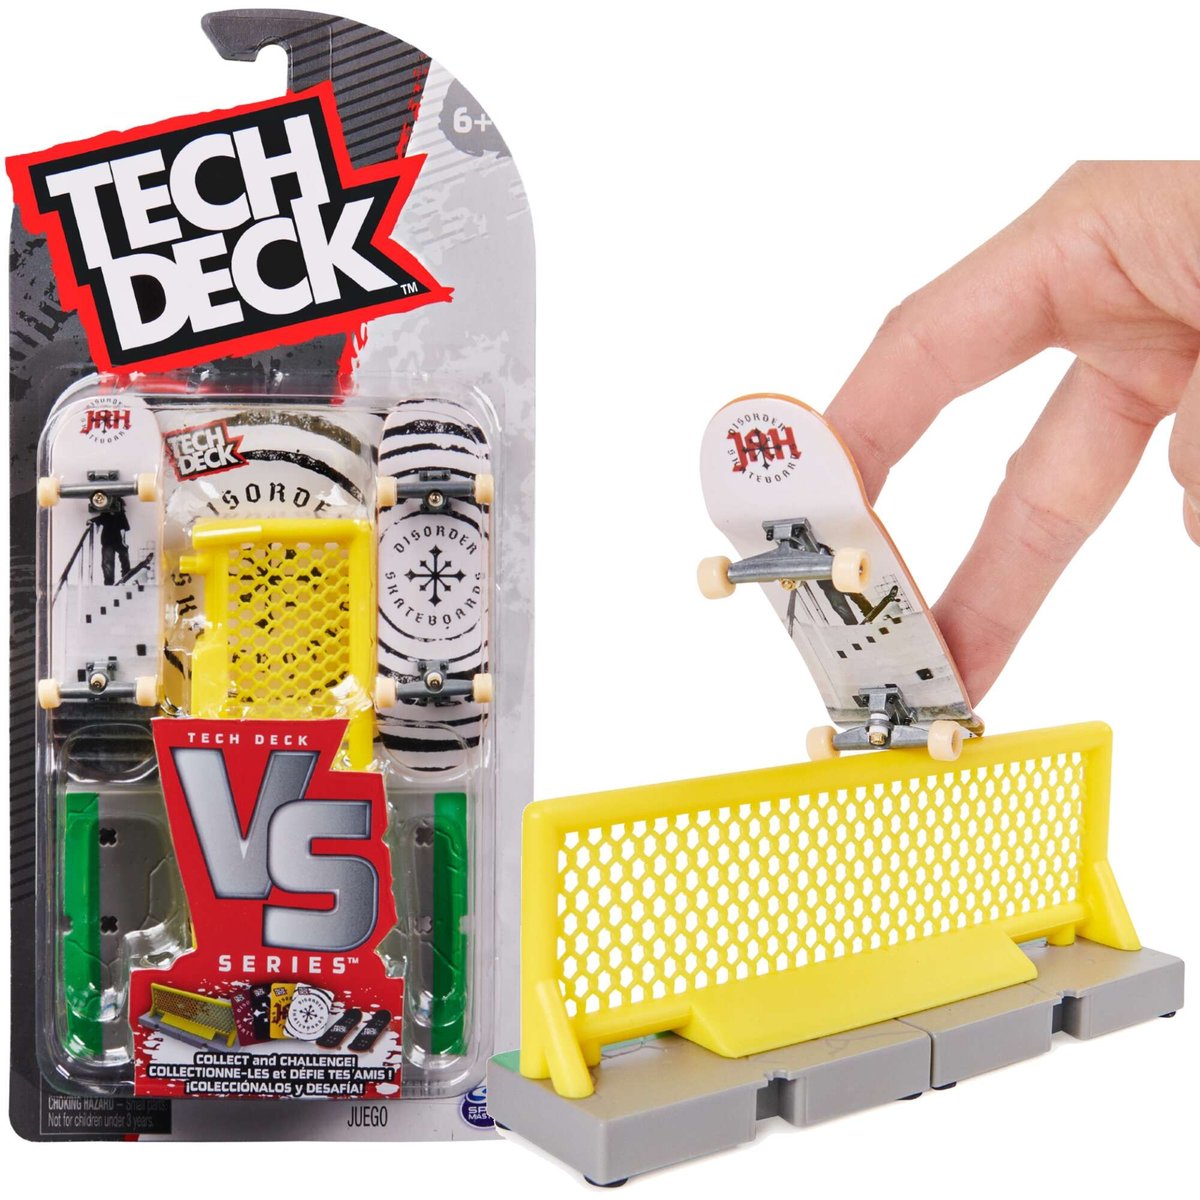 Tech Deck VS series deskorolka fingerboard zestaw Disorder